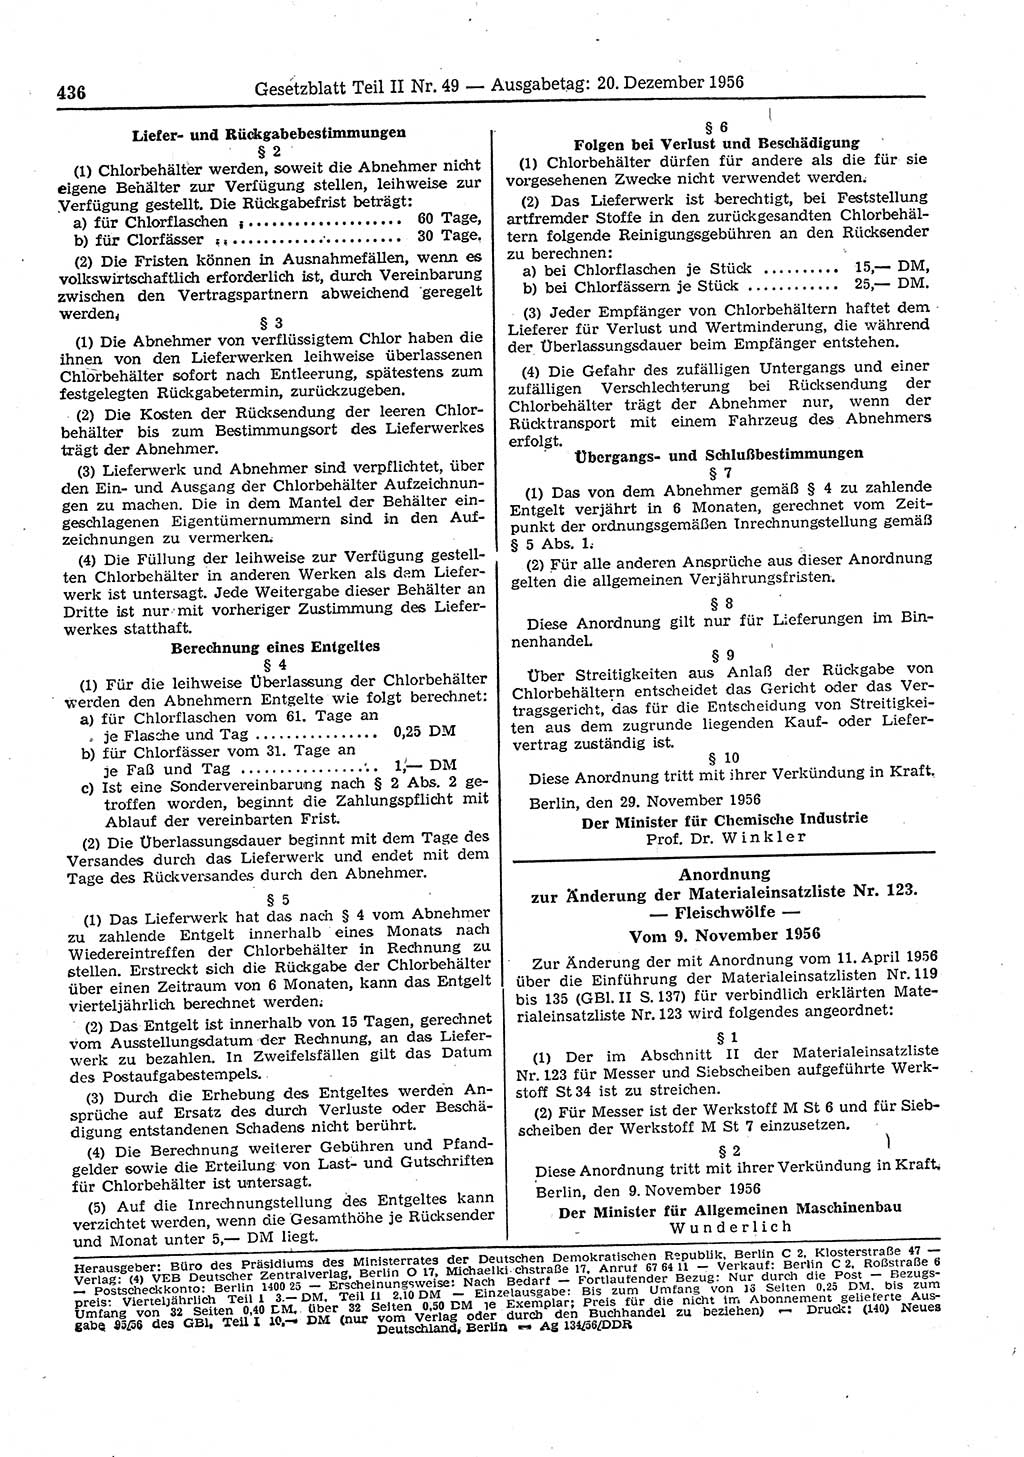 Gesetzblatt (GBl.) der Deutschen Demokratischen Republik (DDR) Teil ⅠⅠ 1956, Seite 436 (GBl. DDR ⅠⅠ 1956, S. 436)